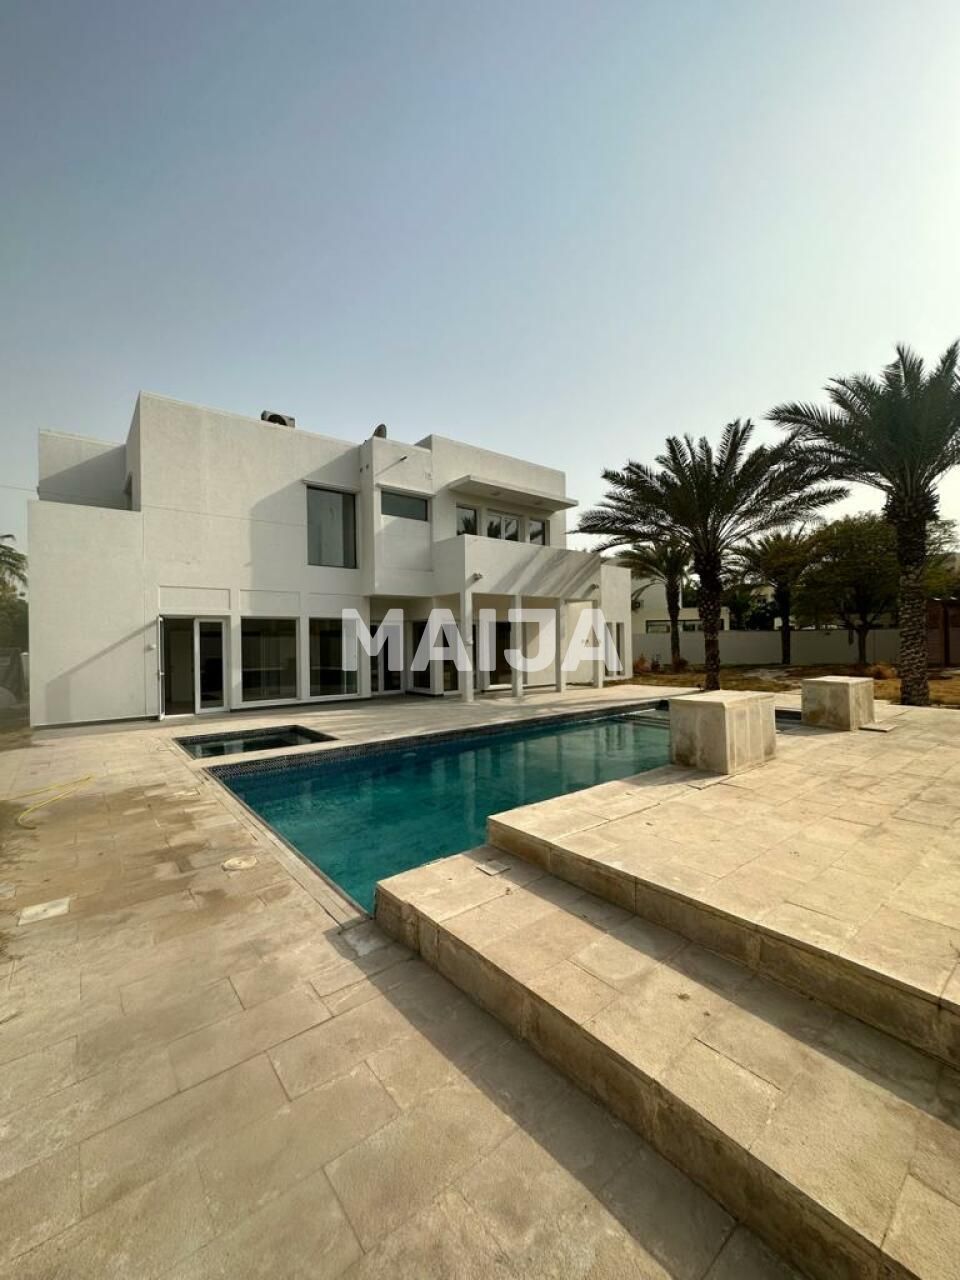 Villa in Dubai, UAE, 603.87 sq.m - picture 1